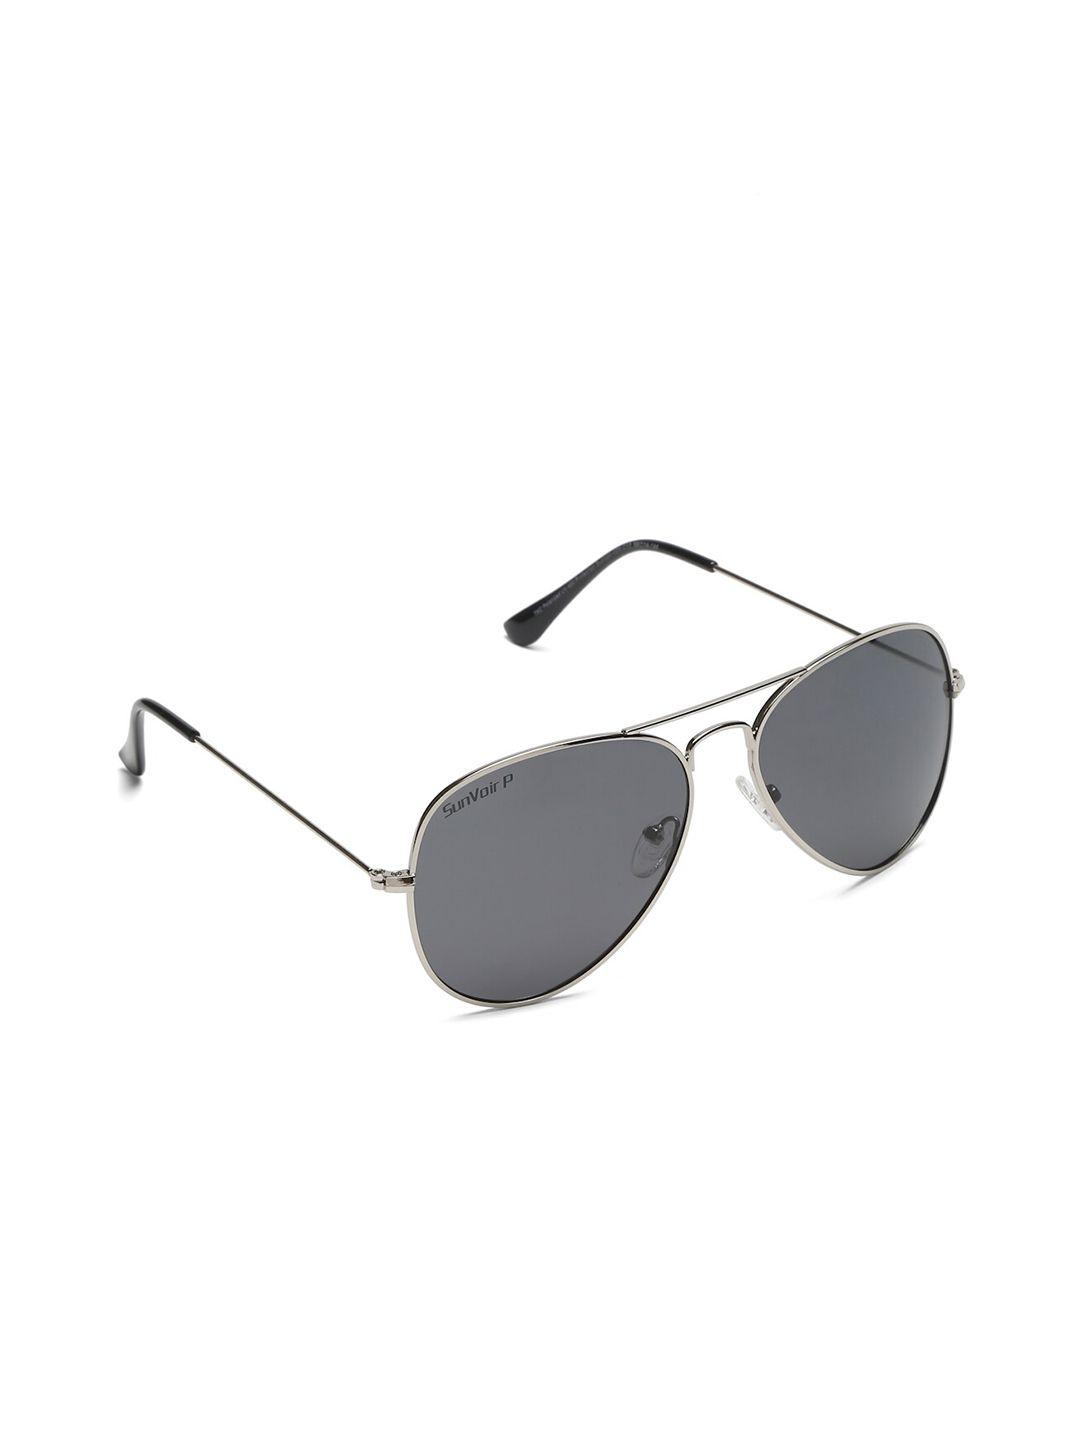 sunnies full rim aviator sunglasses with polarised lens sunnies-021-c12